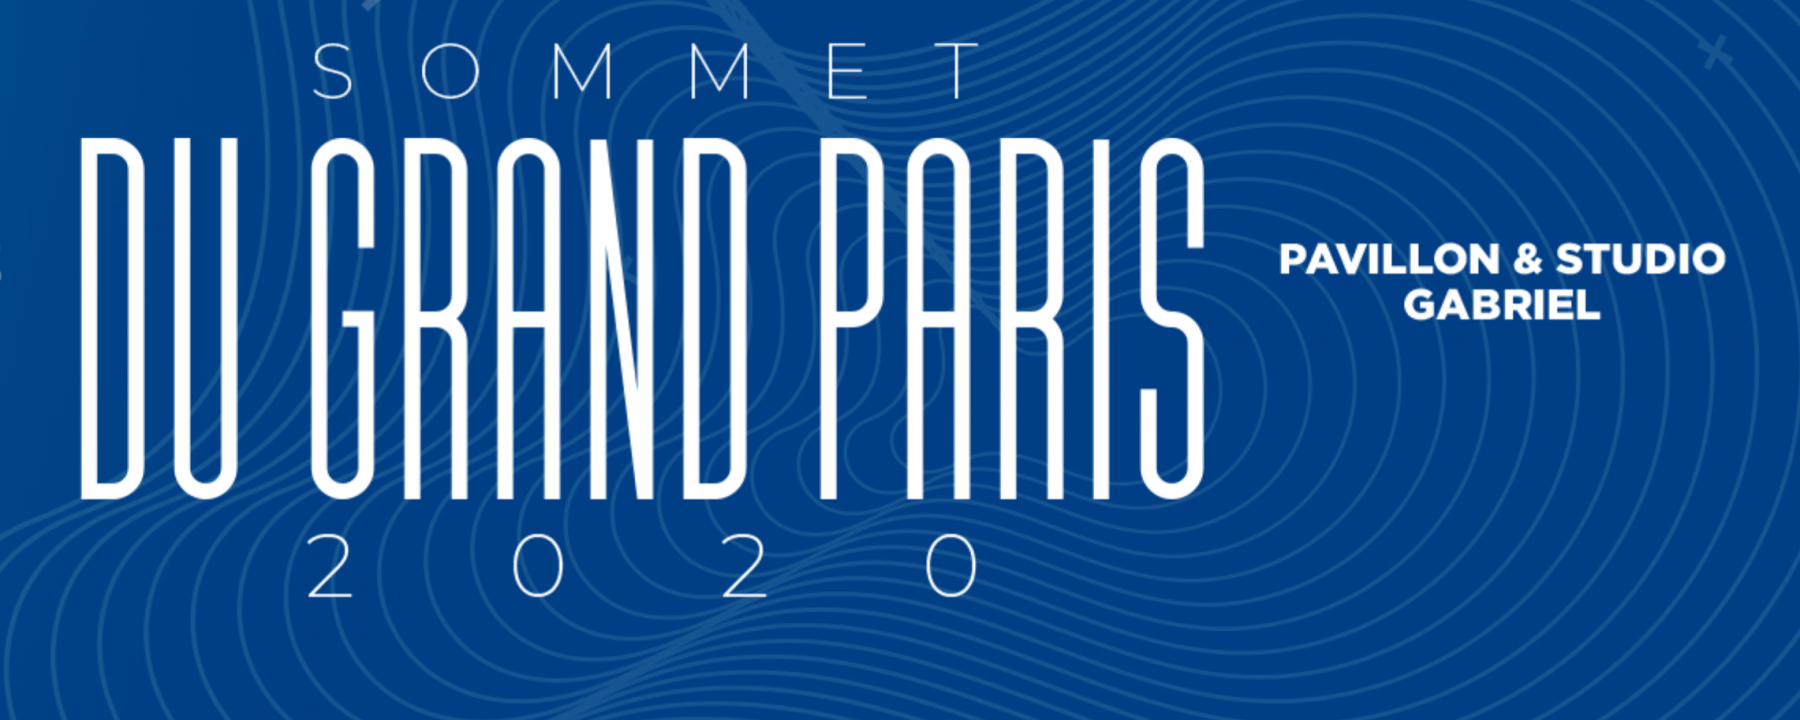 Sommet du grand paris, un événement organisé par La Tribune, reporté au 16 juin 2020